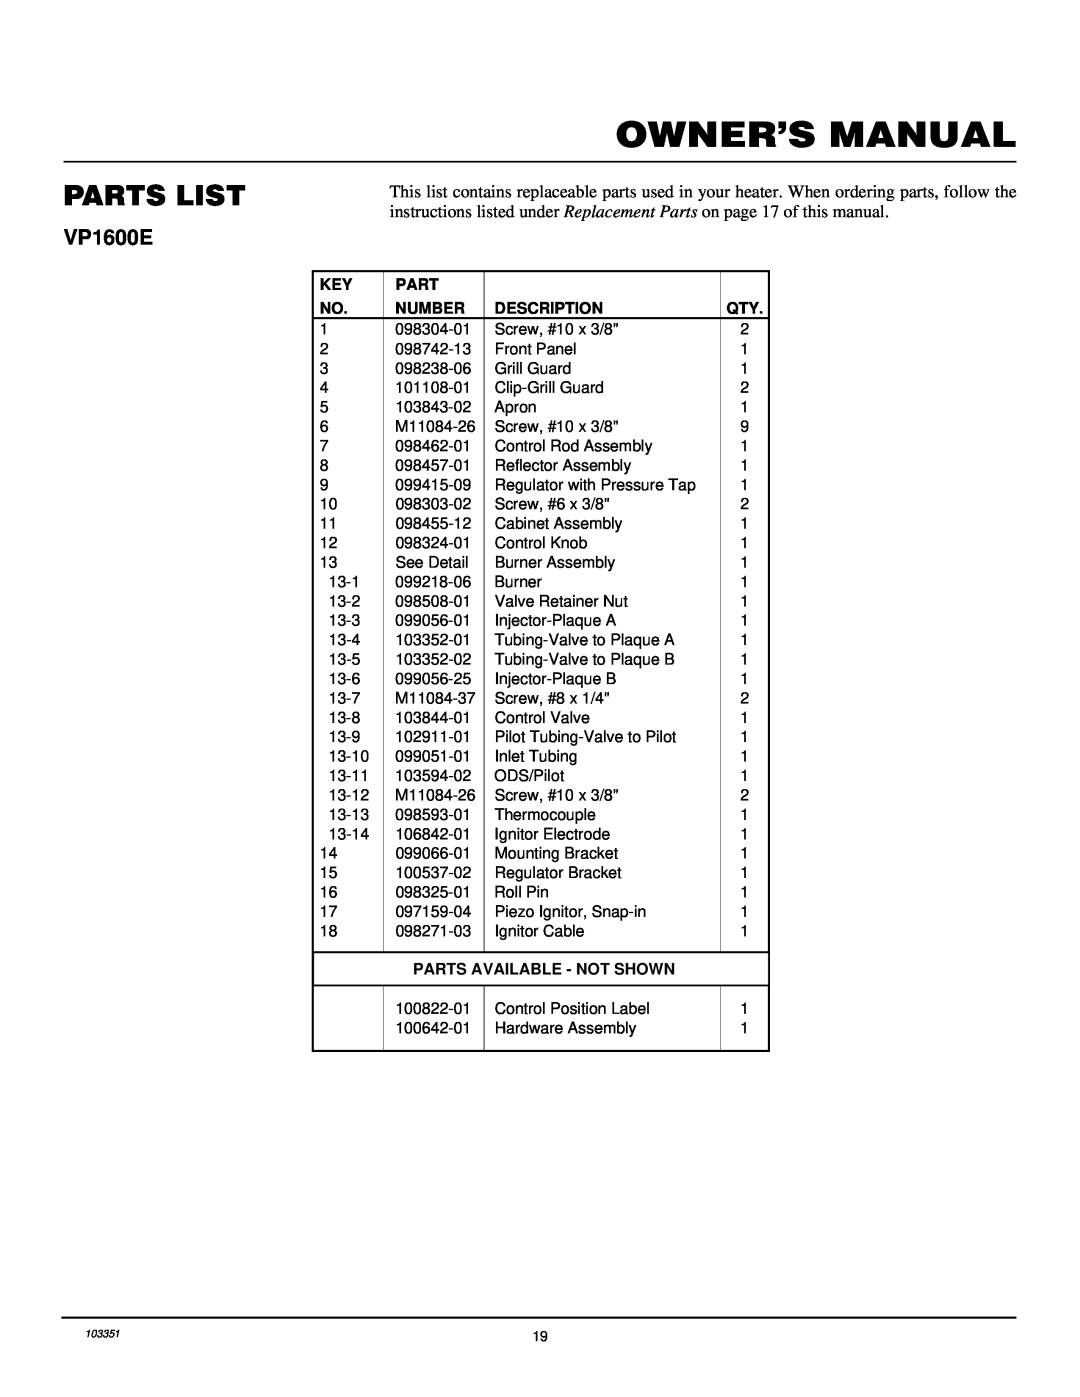 Desa VP2600E, VP1600E installation manual Parts List, Number, Description, Parts Available - Not Shown 